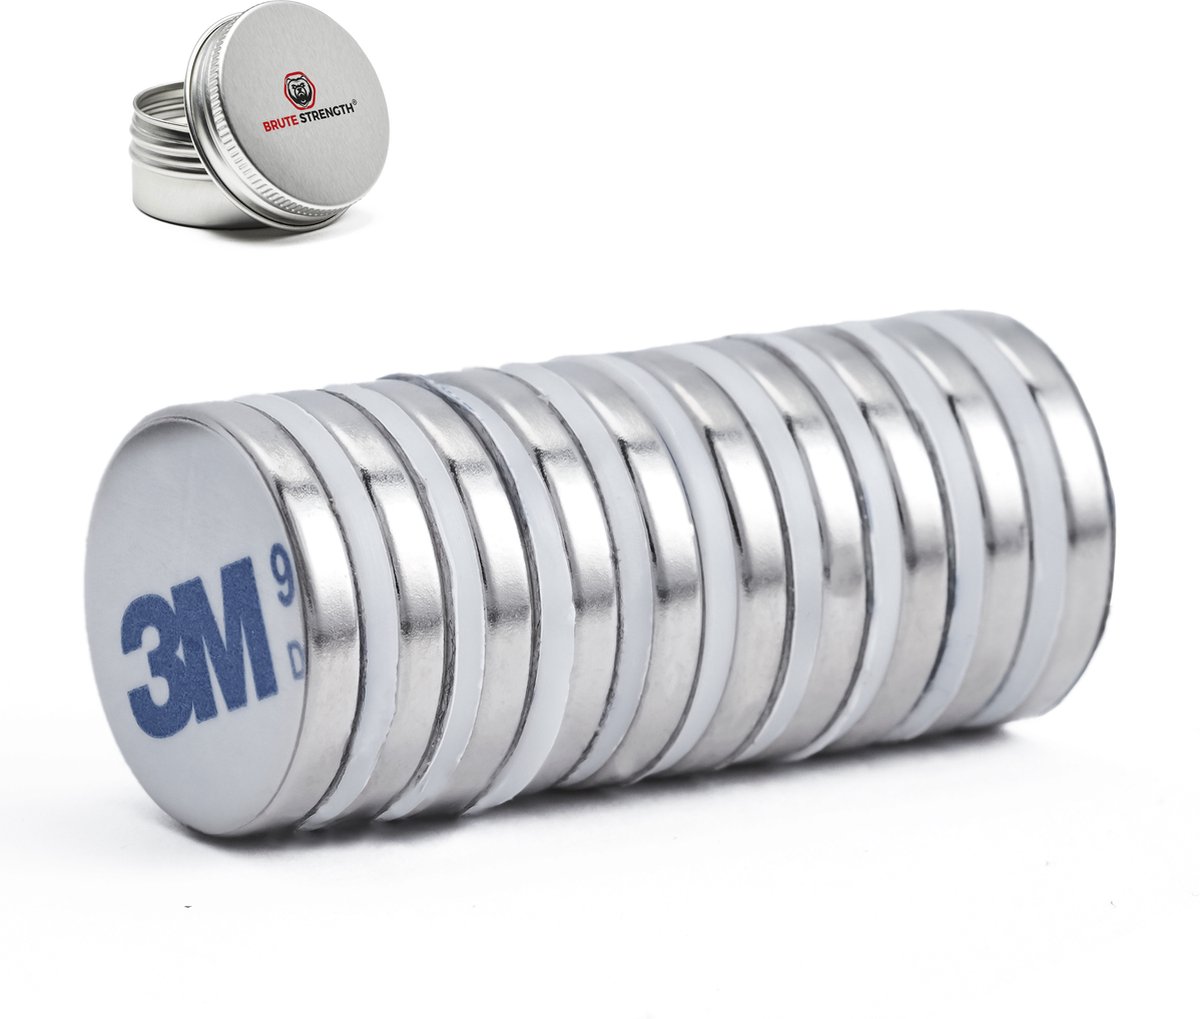 Brute Strength - Super sterke zelfklevende 3M magneten - Rond - 20 x 3 mm - 10 Stuks - Kleef Magneten - Neodymium magneet sterk - Voor koelkast - whiteboard